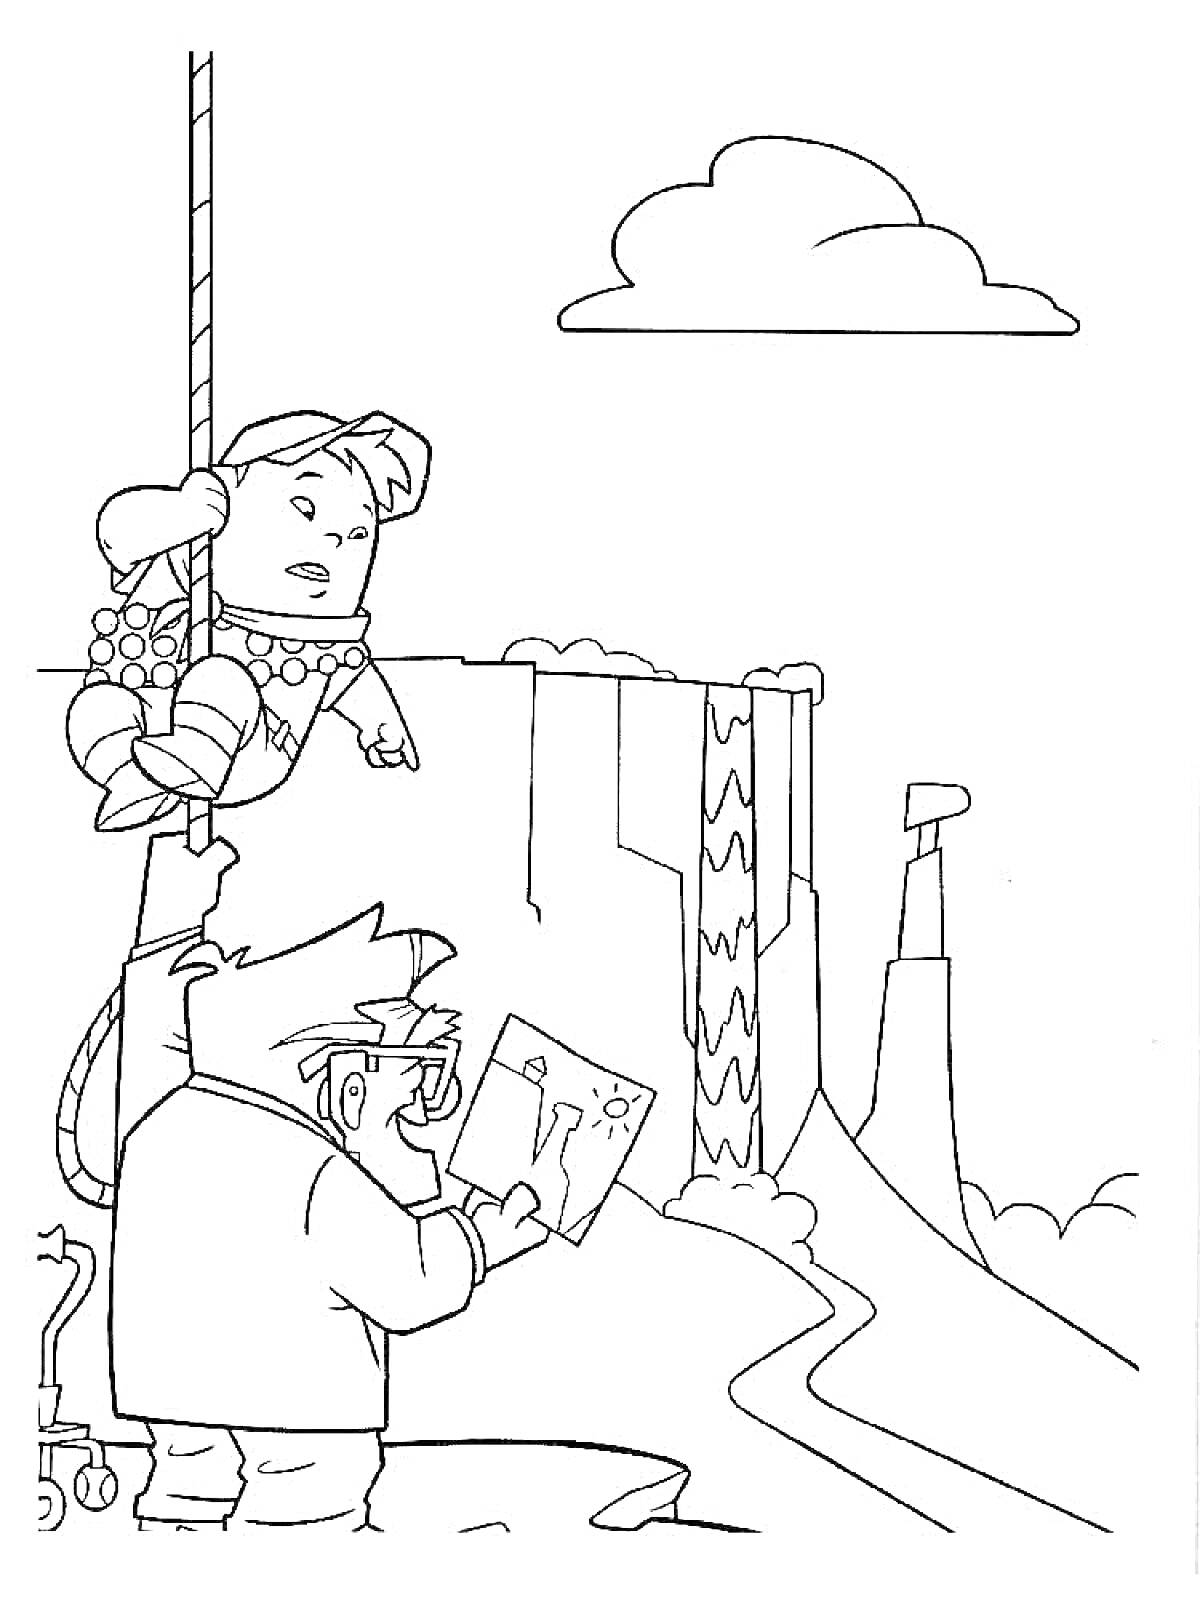 Собака на веревке и ученый у водопада, скала с телескопом, облако и небо